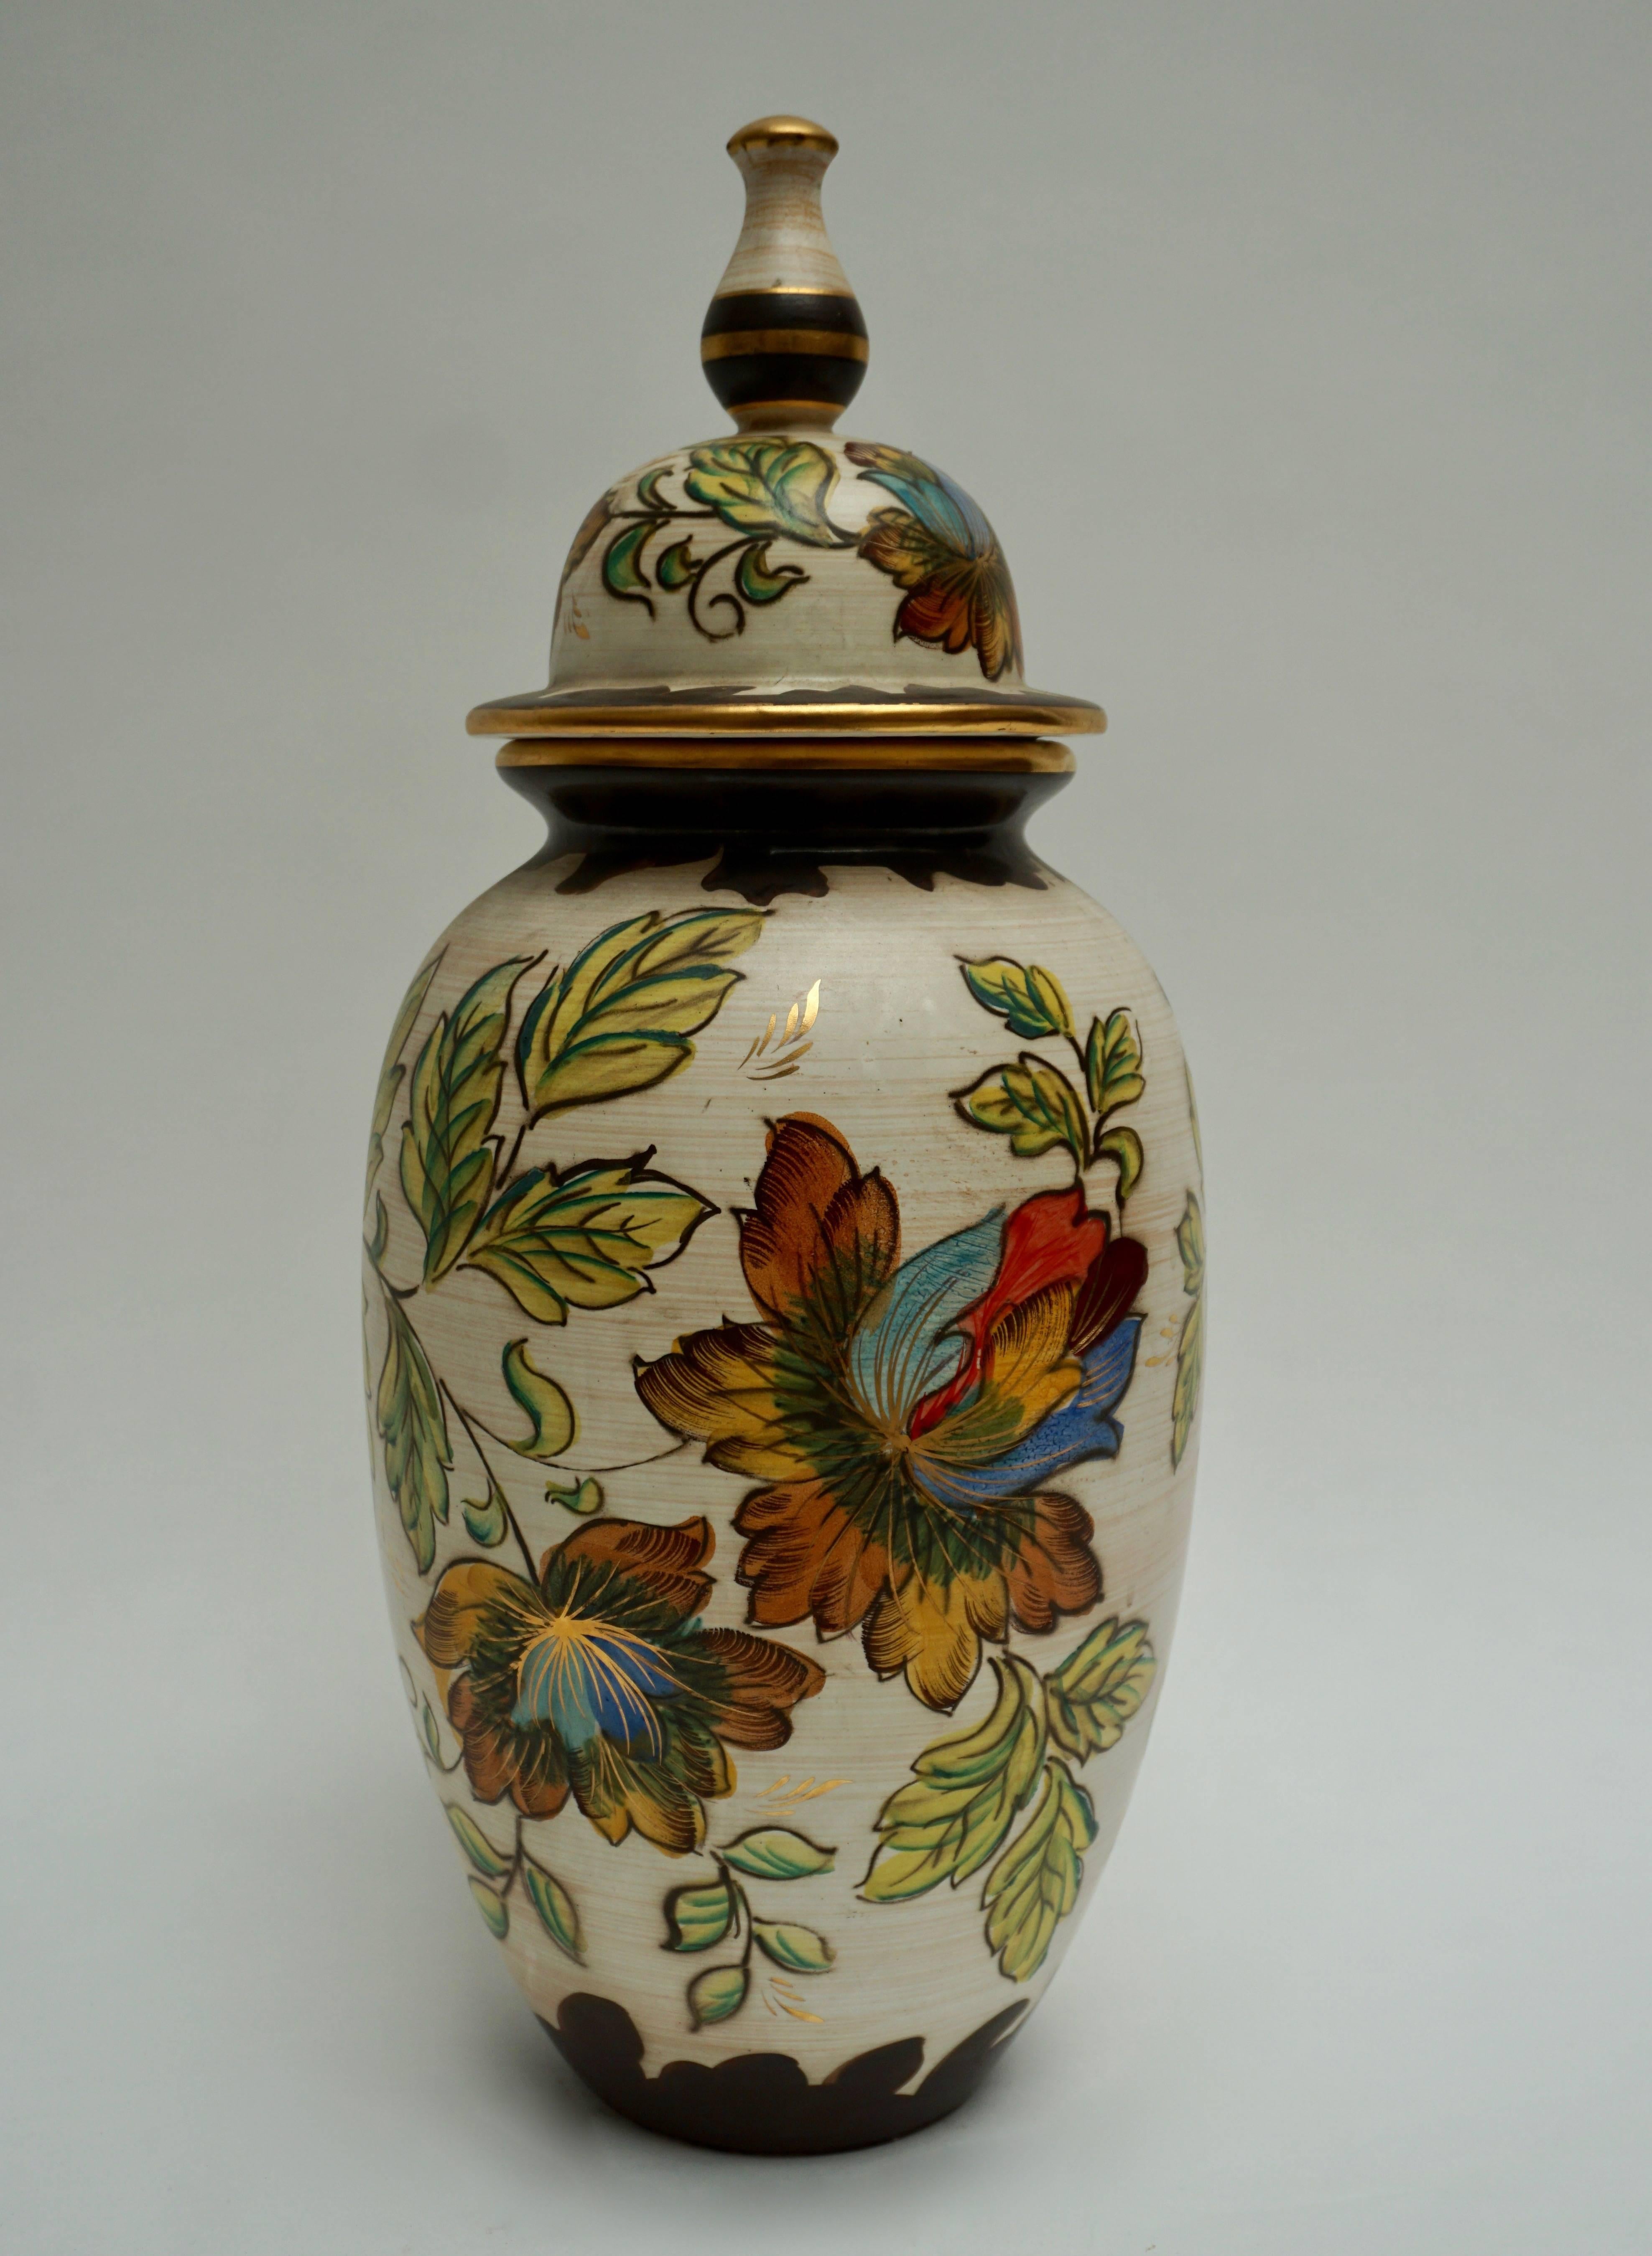 Ceramic vase decorated with flowers.
Measures: Height 56 cm.
Diameter 24 cm.